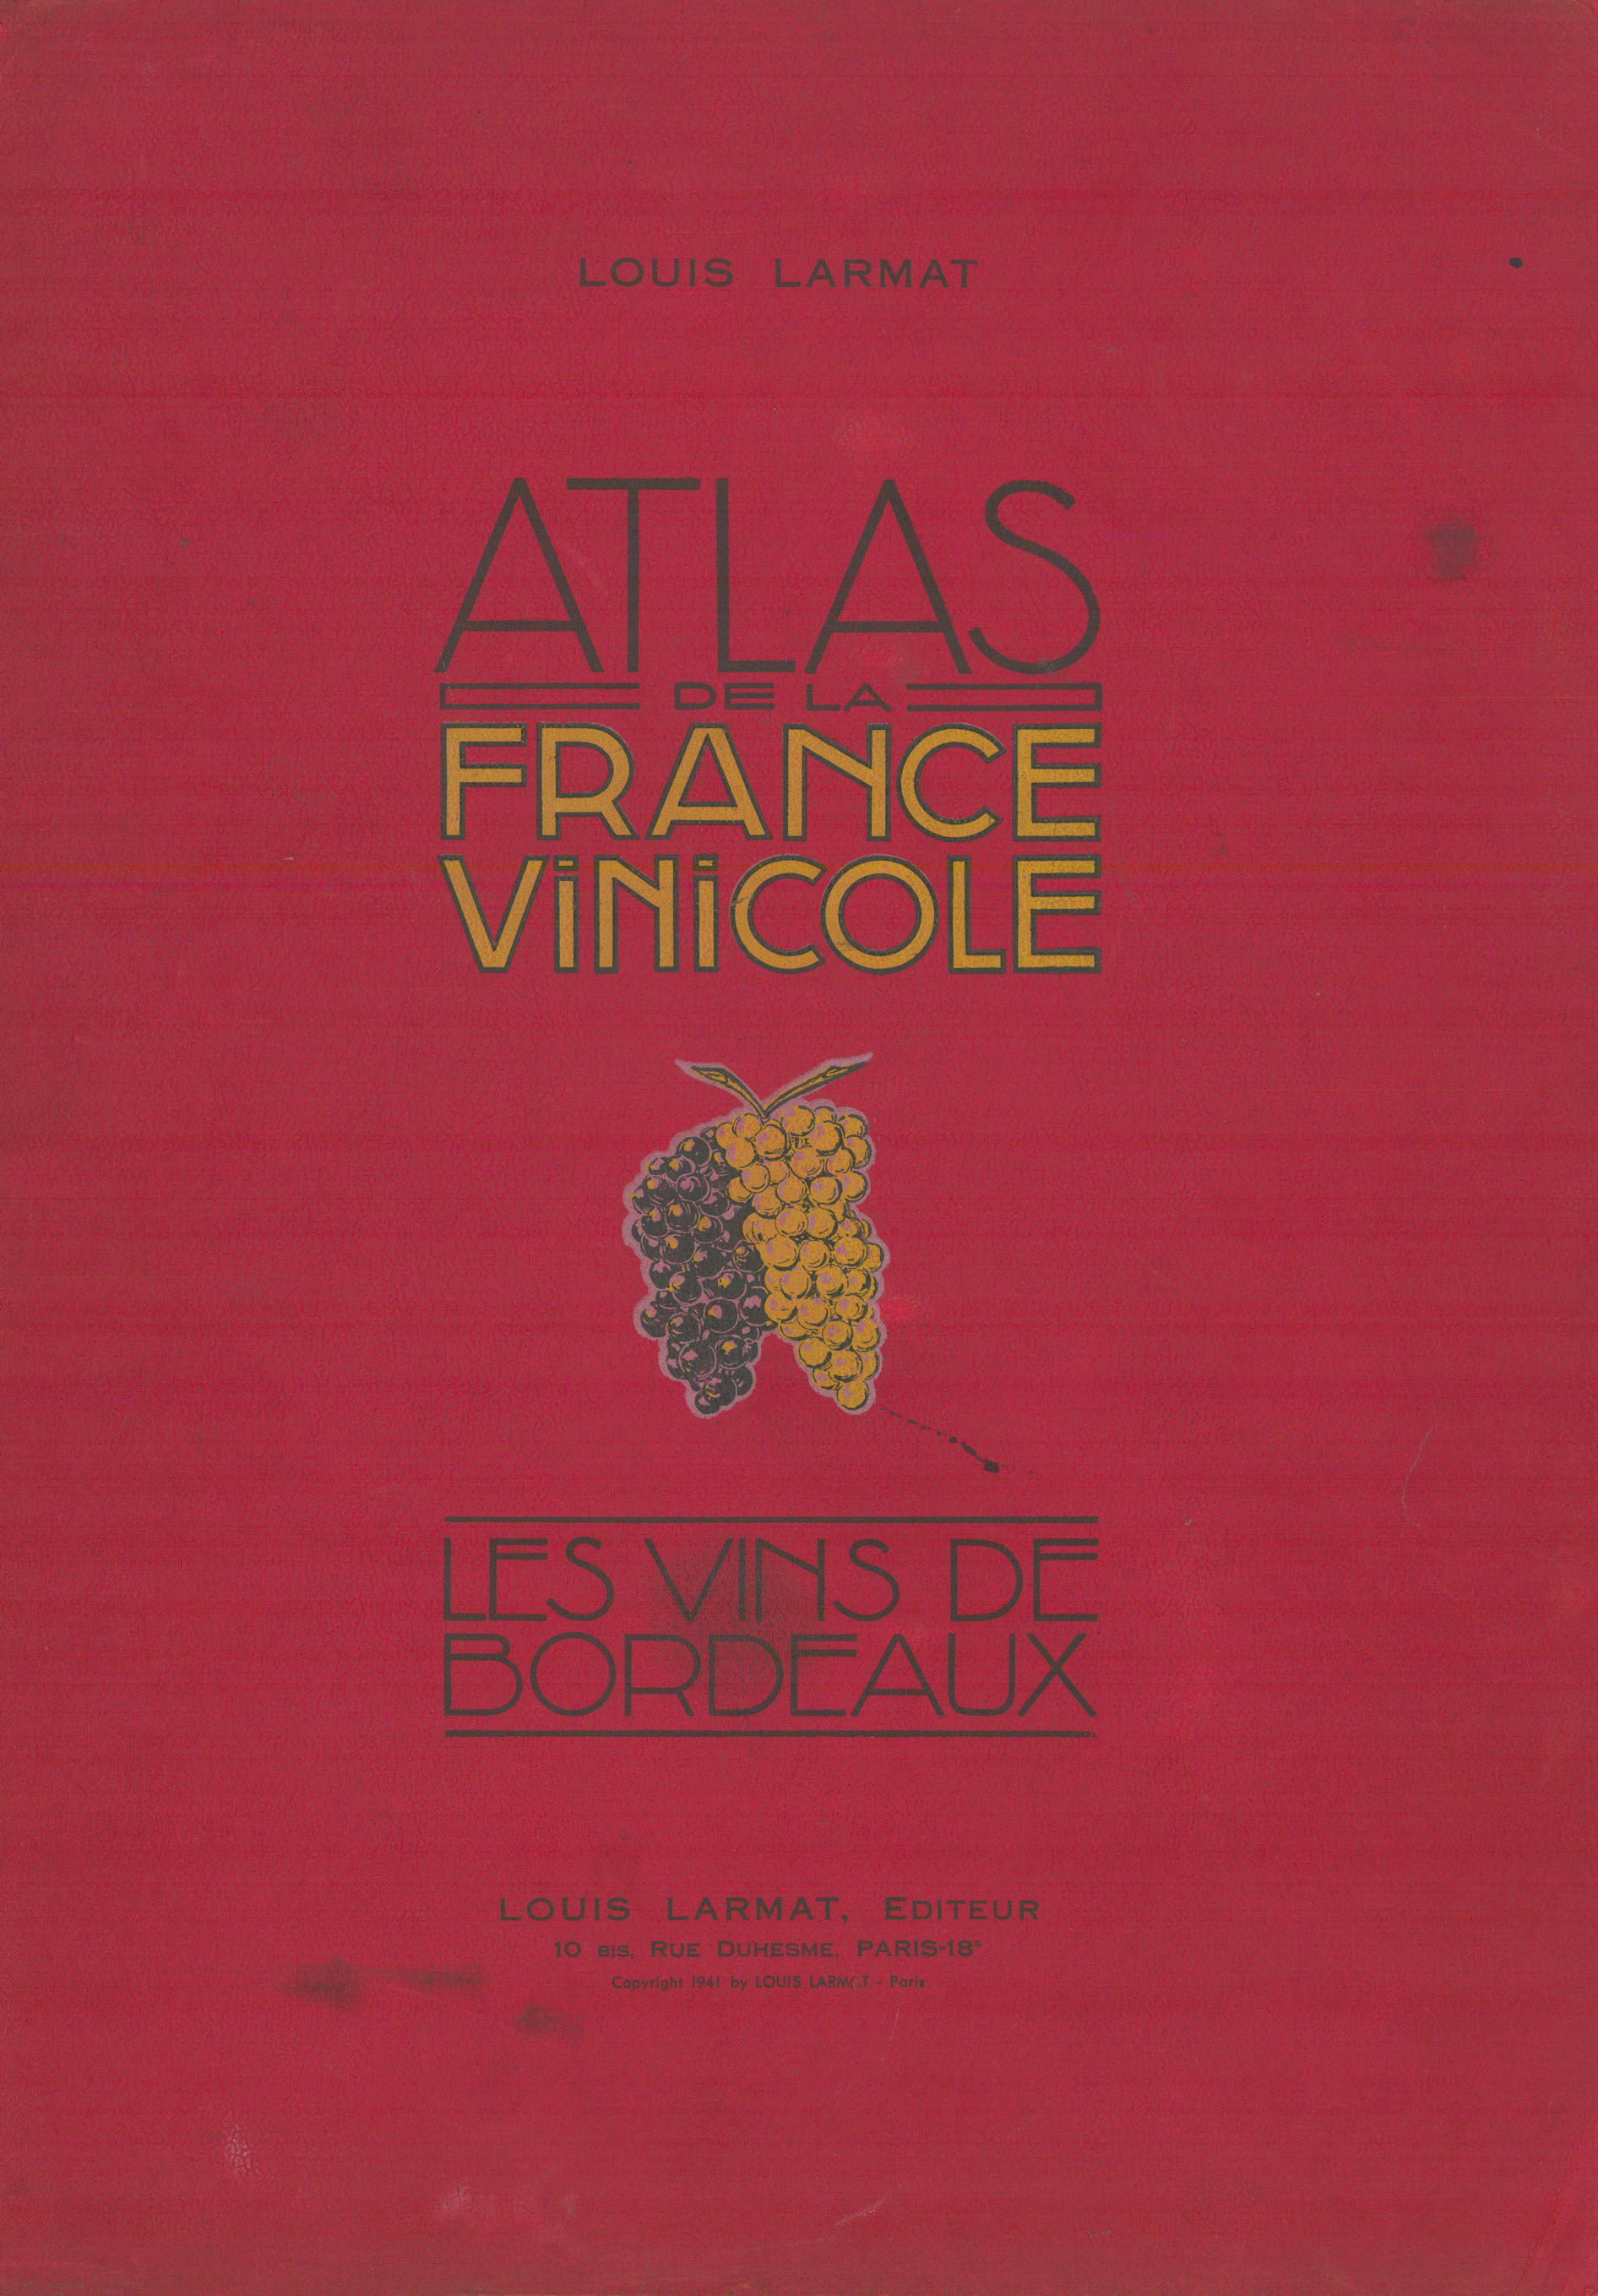 Associate Product Louis Larmat. Atlas de la France Vinicole cover. Bordeaux (2) 1941 old print